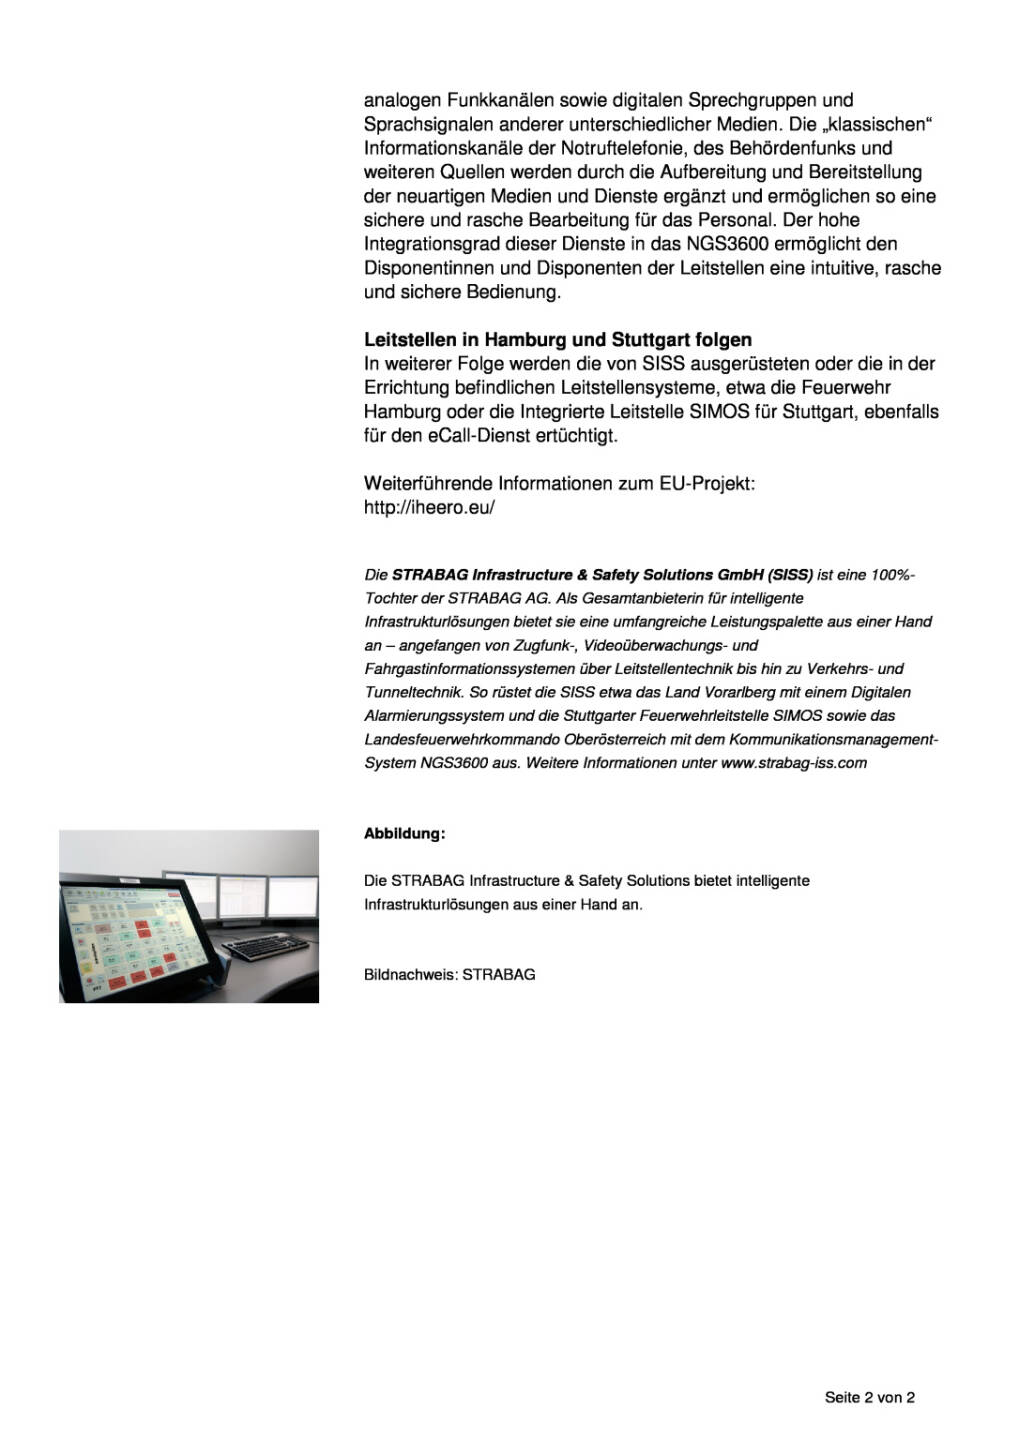 Strabag-Produkt im Einsatz: Luxemburg erhält erste EU-Zertifizierung für automatischen PKW-Notrufdienst, Seite 2/2, komplettes Dokument unter http://boerse-social.com/static/uploads/file_2403_strabag-produkt_im_einsatz_luxemburg_erhalt_erste_eu-zertifizierung_fur_automatischen_pkw-notrufdienst.pdf